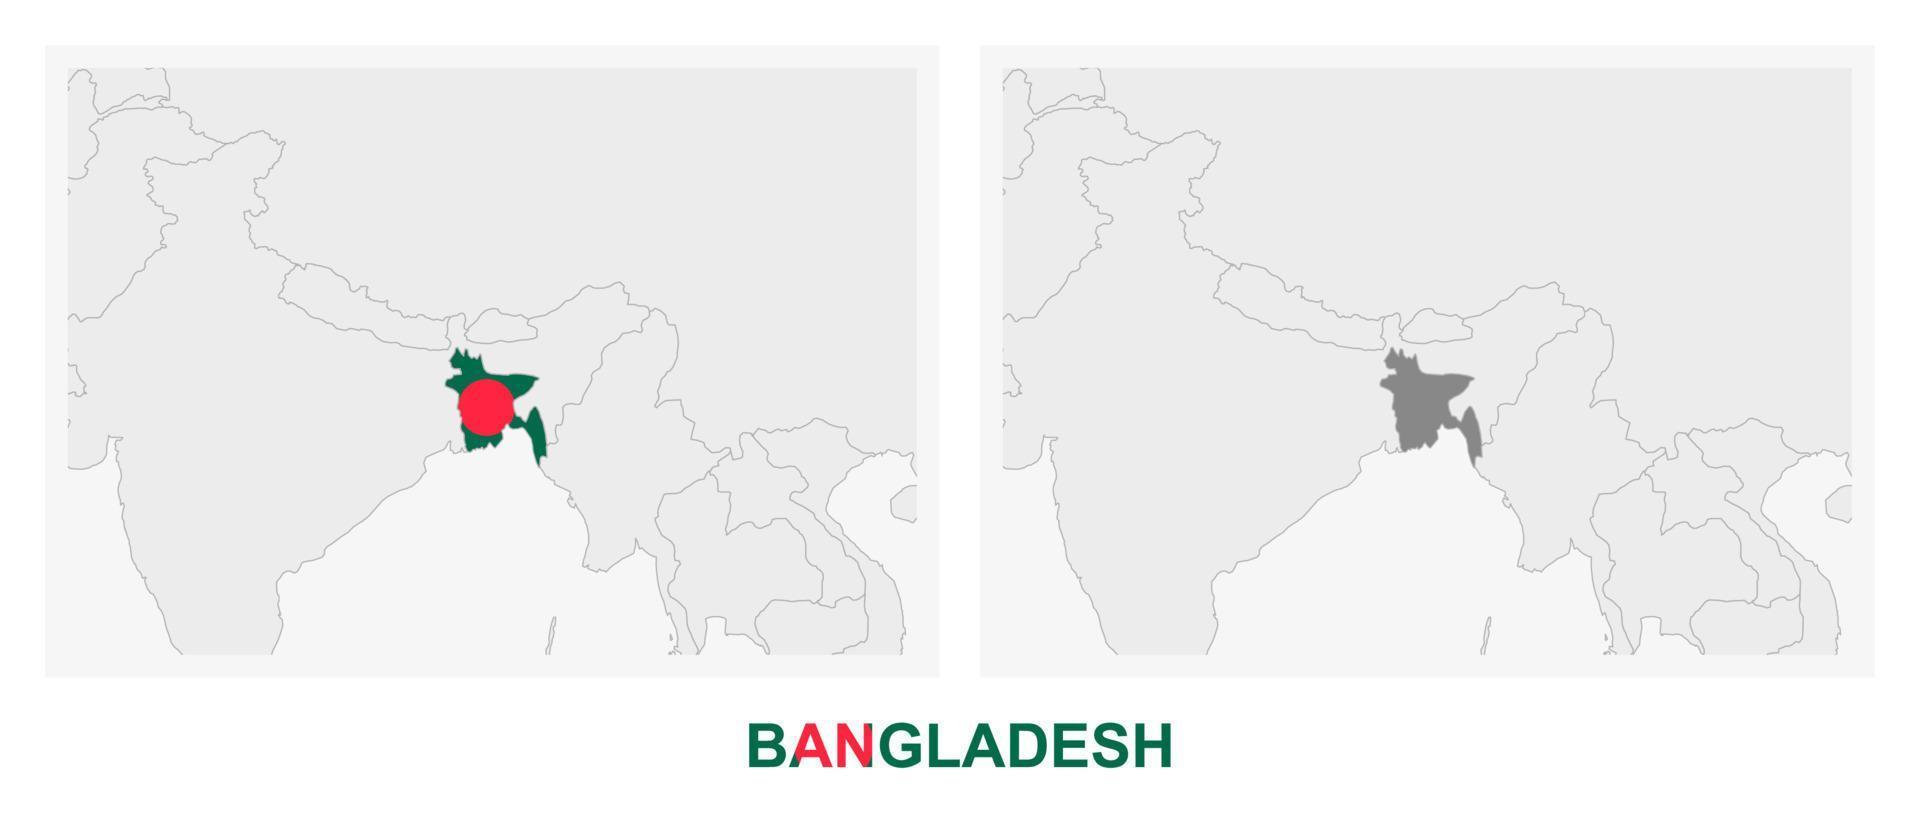 dos versiones del mapa de bangladesh, con la bandera de bangladesh y resaltada en gris oscuro. vector